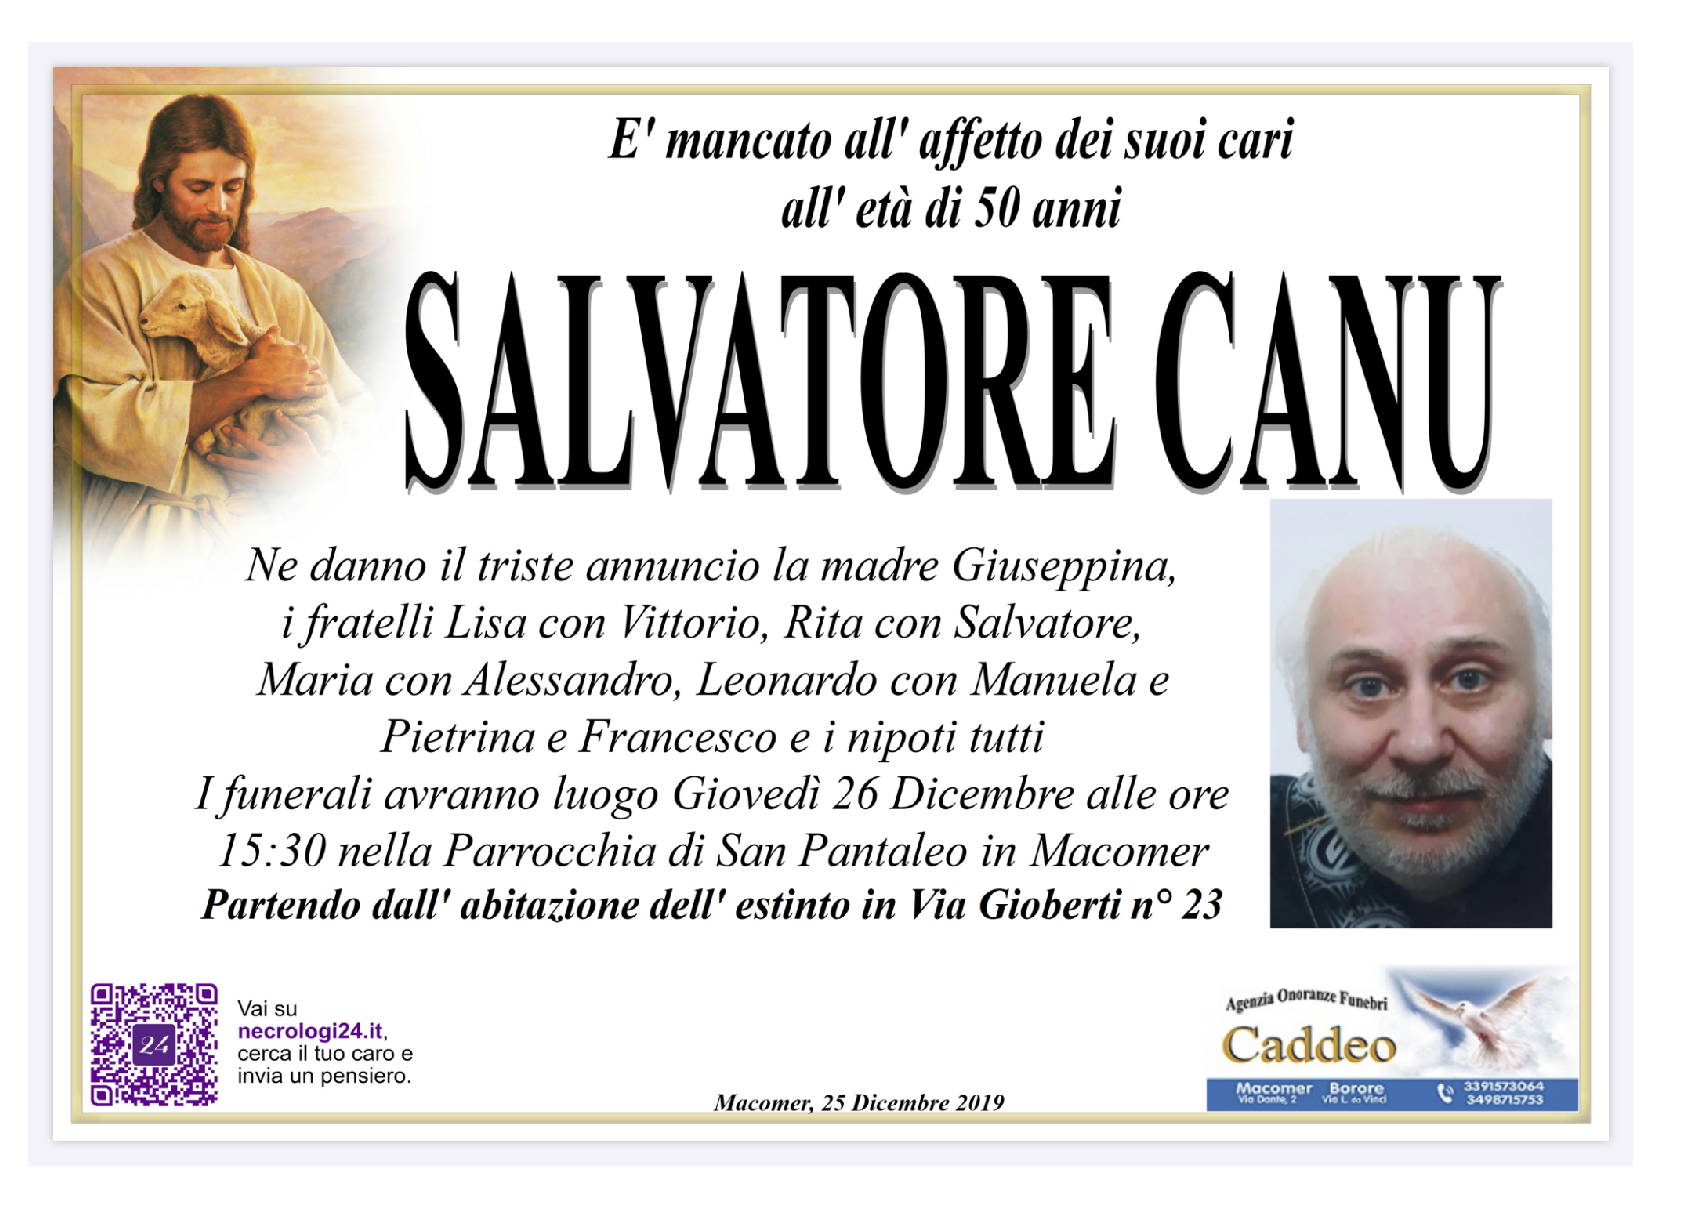 Salvatore Canu